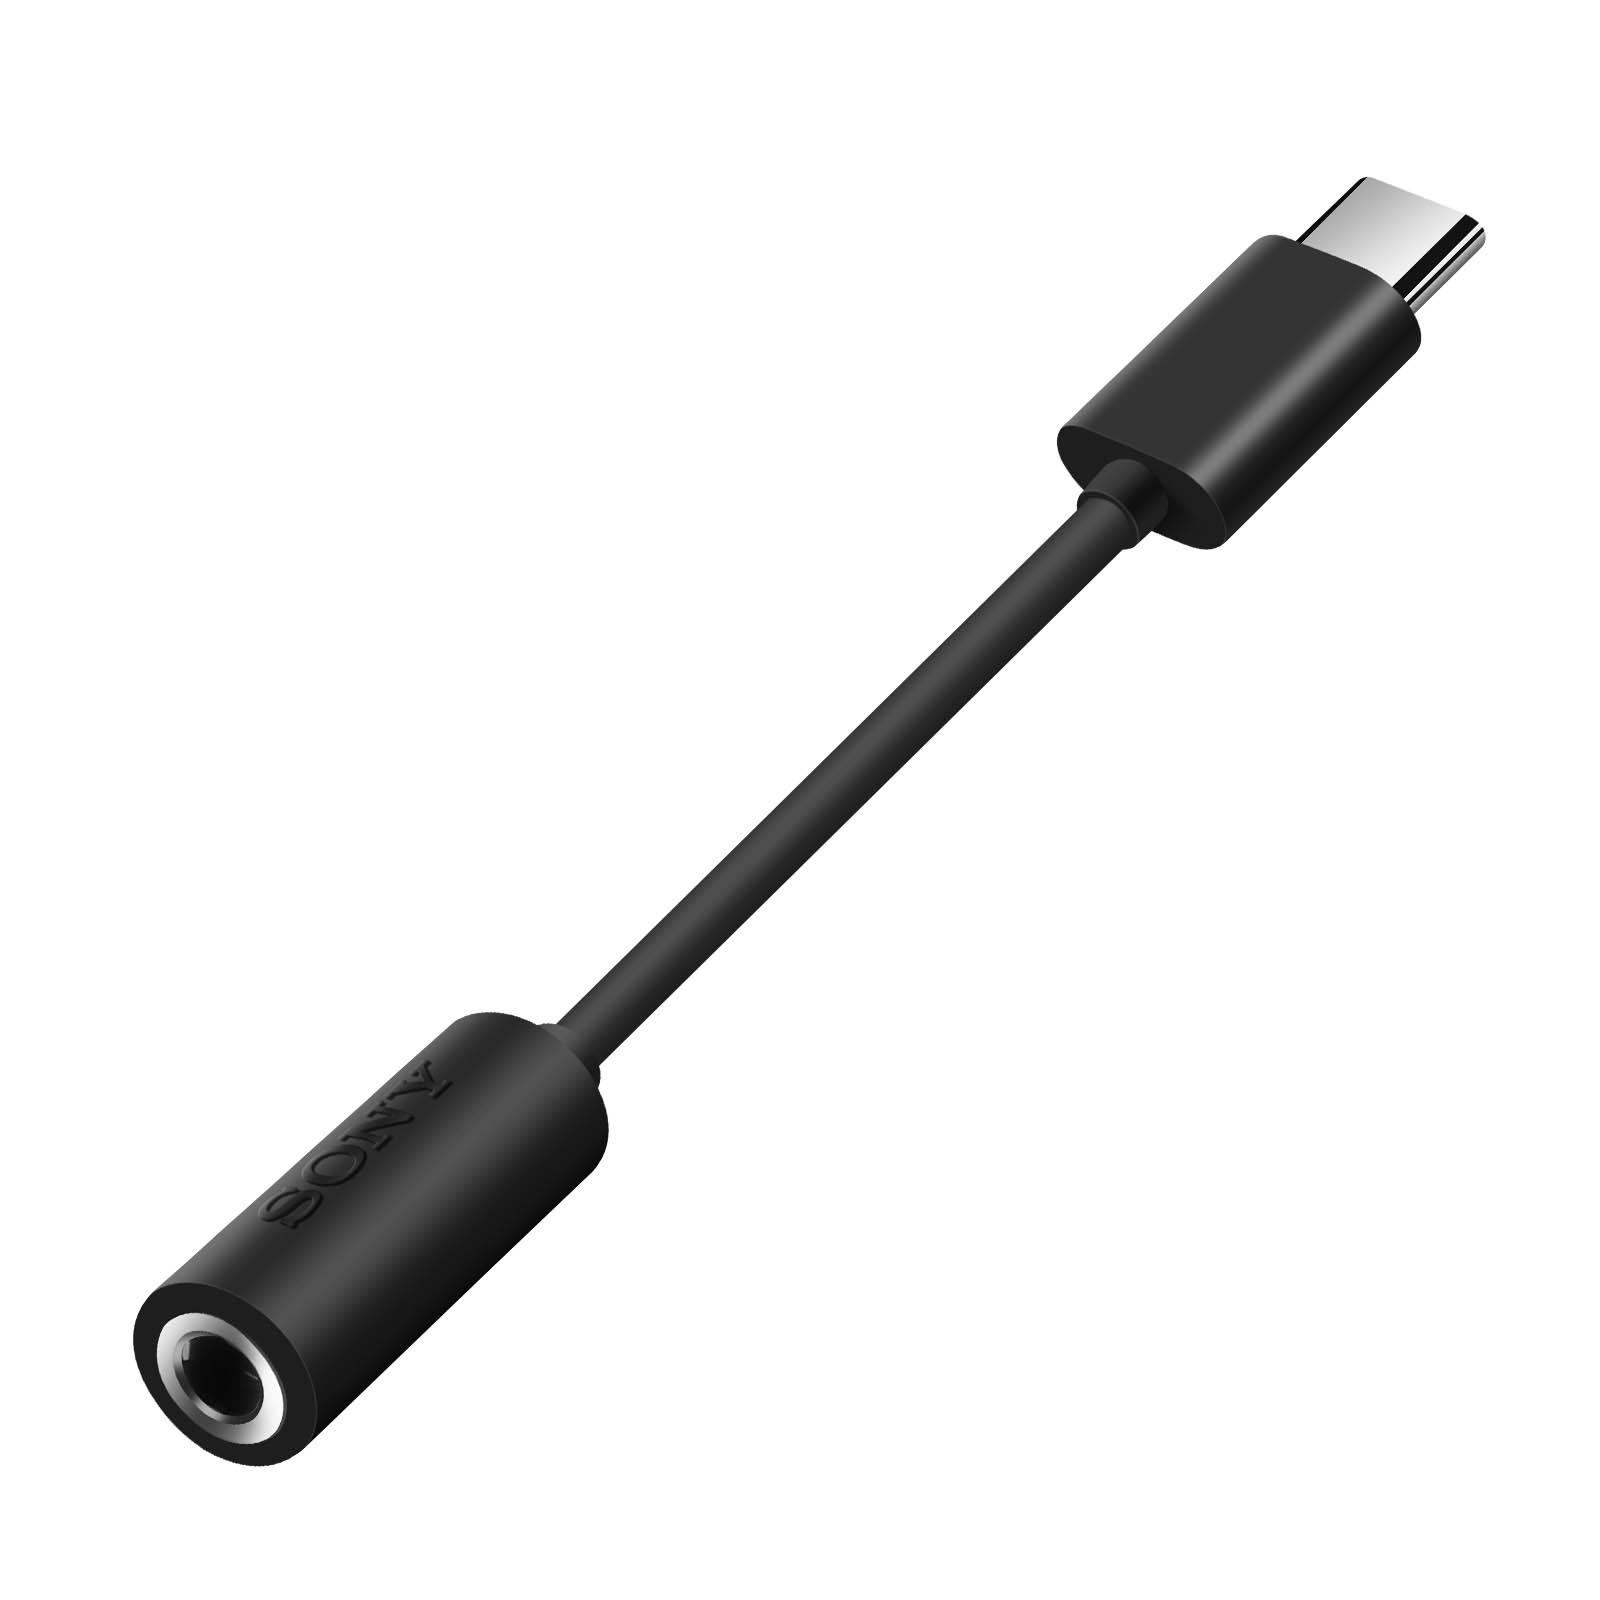 ADAPTADOR USB TIPO C 3.1 A JACK HEMBRA 3.5MM COLOR NEGRO